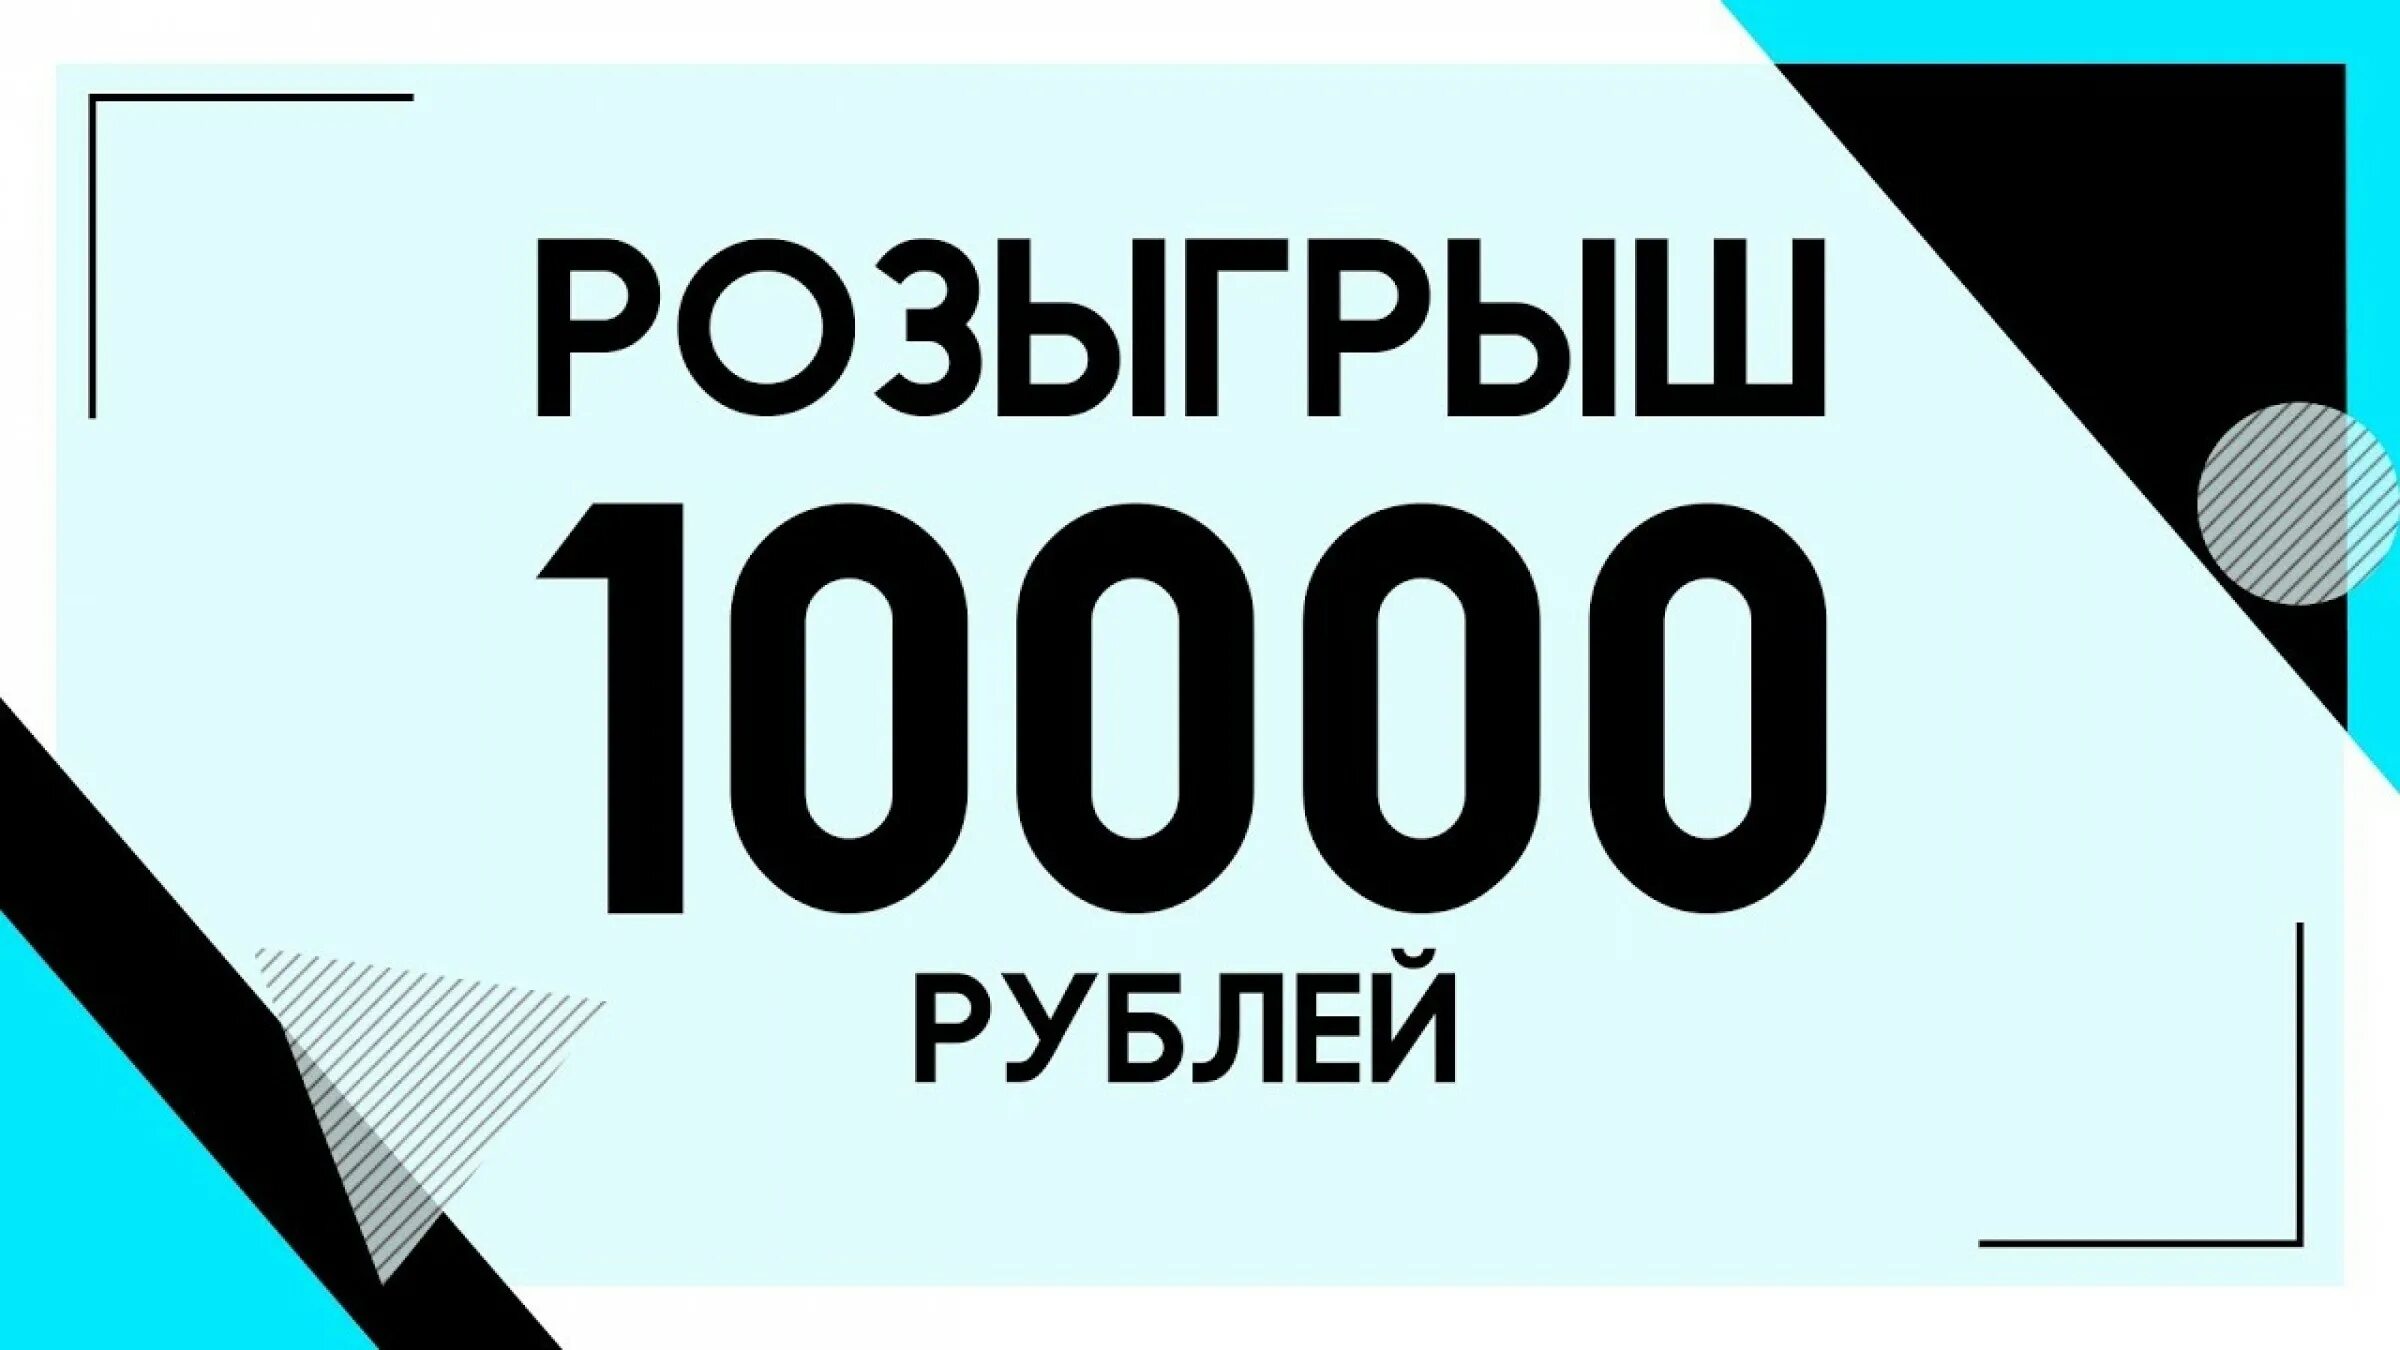 18 00 в рублях. 10000 Рублей конкурс. Розыгрыш 10000. Приз 10000 рублей. Розыгрыш 10 тысяч рублей.